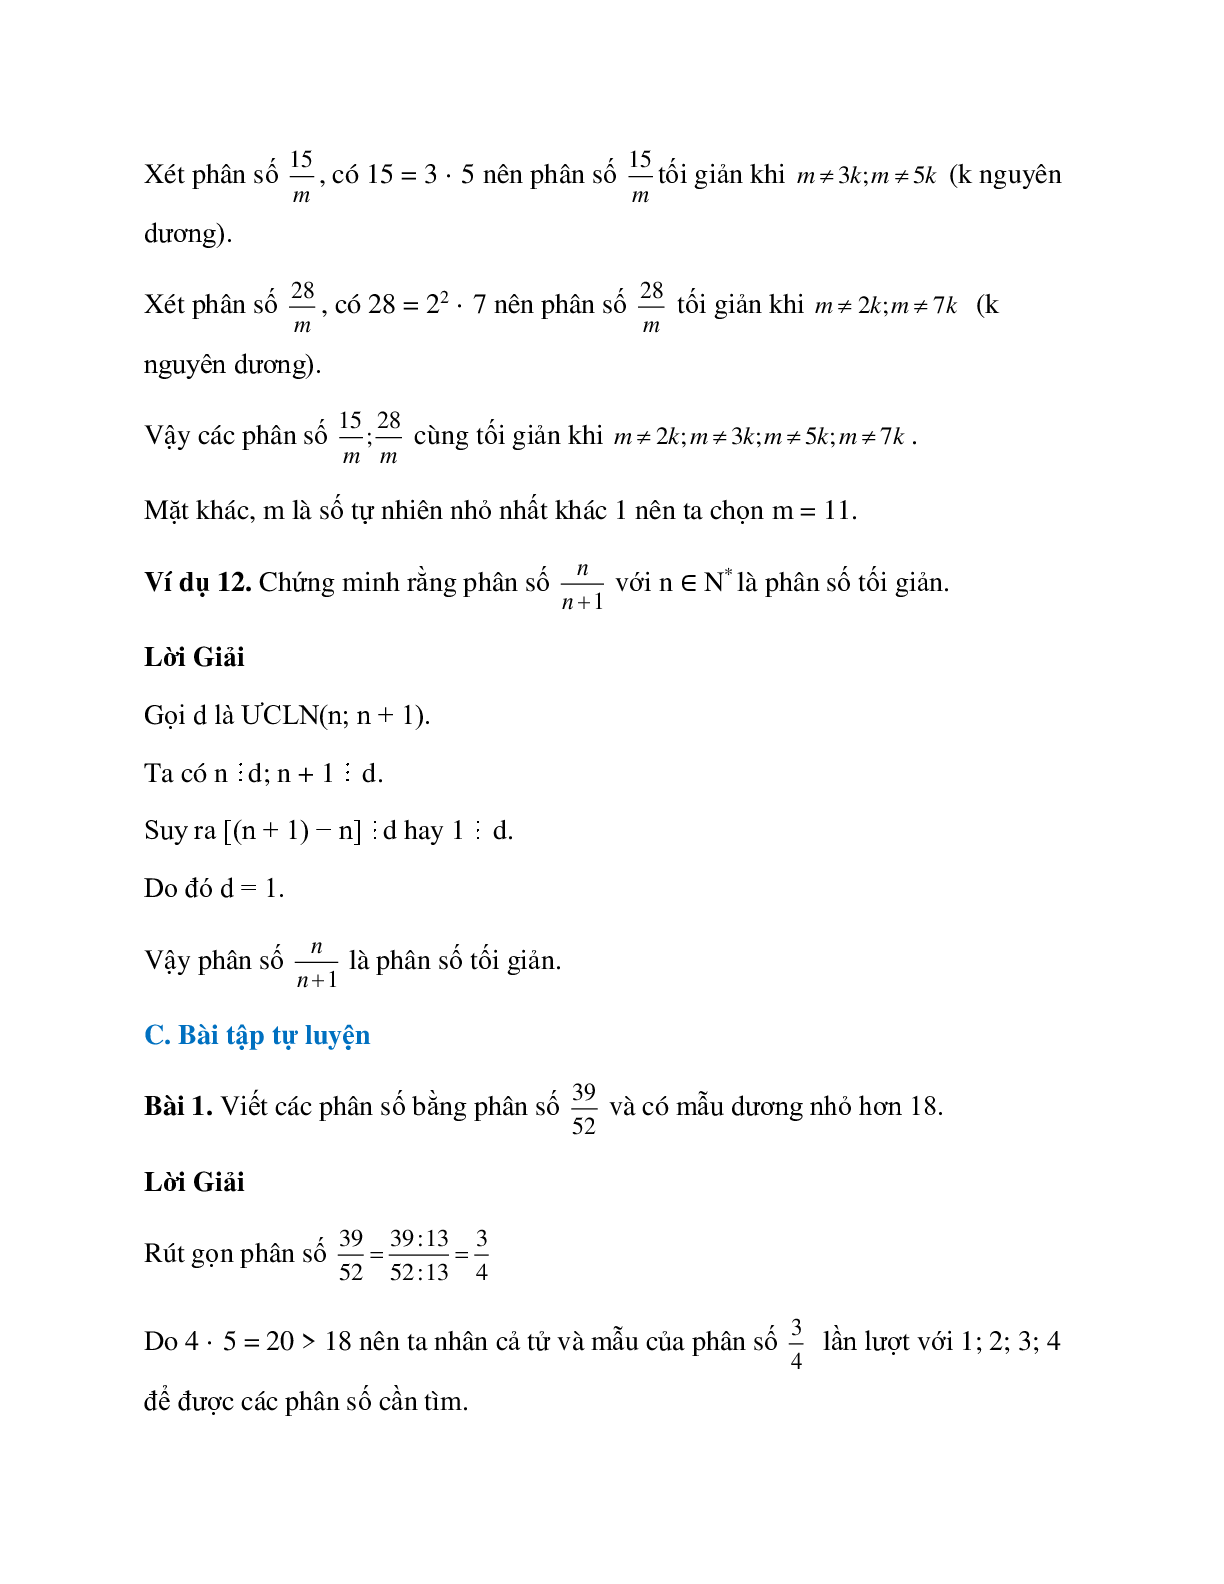 Hệ thống bài tập về tính chất cơ bản của phân số có lời giải (trang 5)